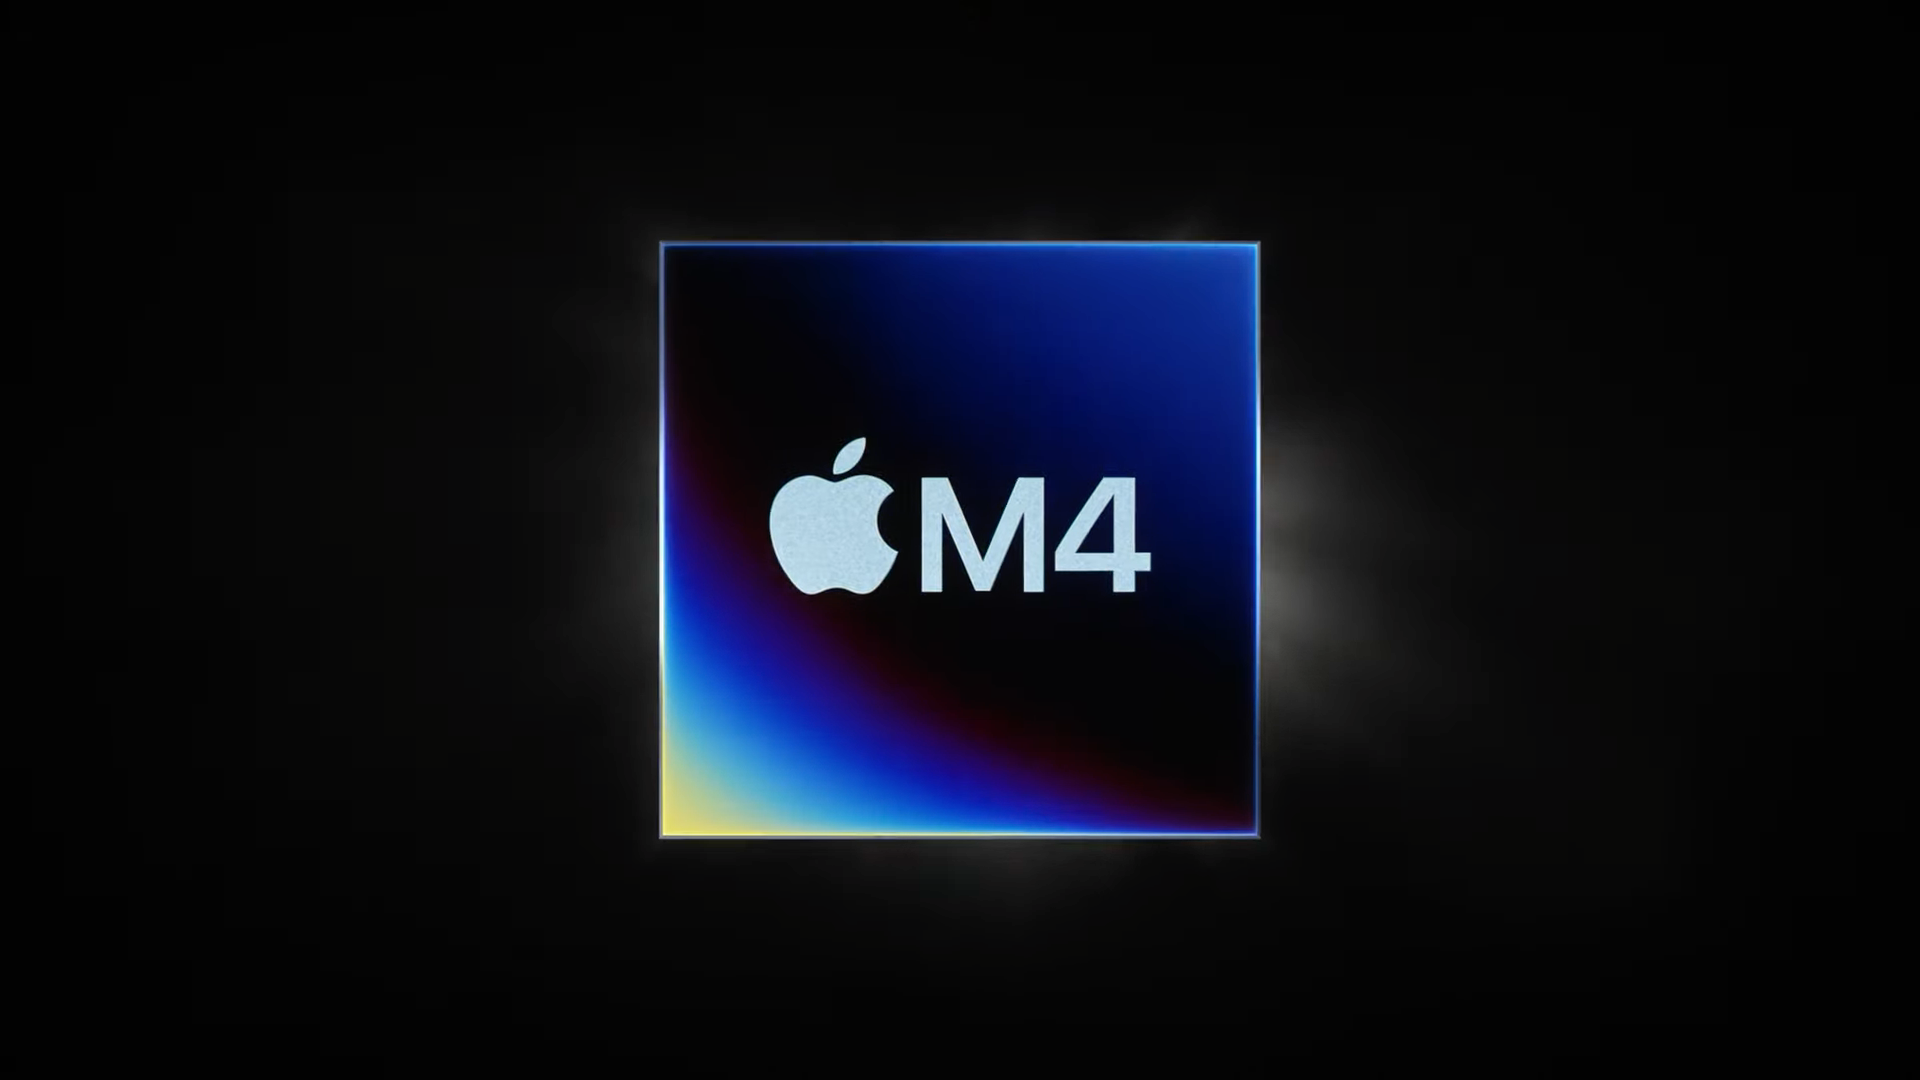 Чип Apple M4 дебютирует в iPad Pro, поскольку Apple опережает Microsoft и Intel